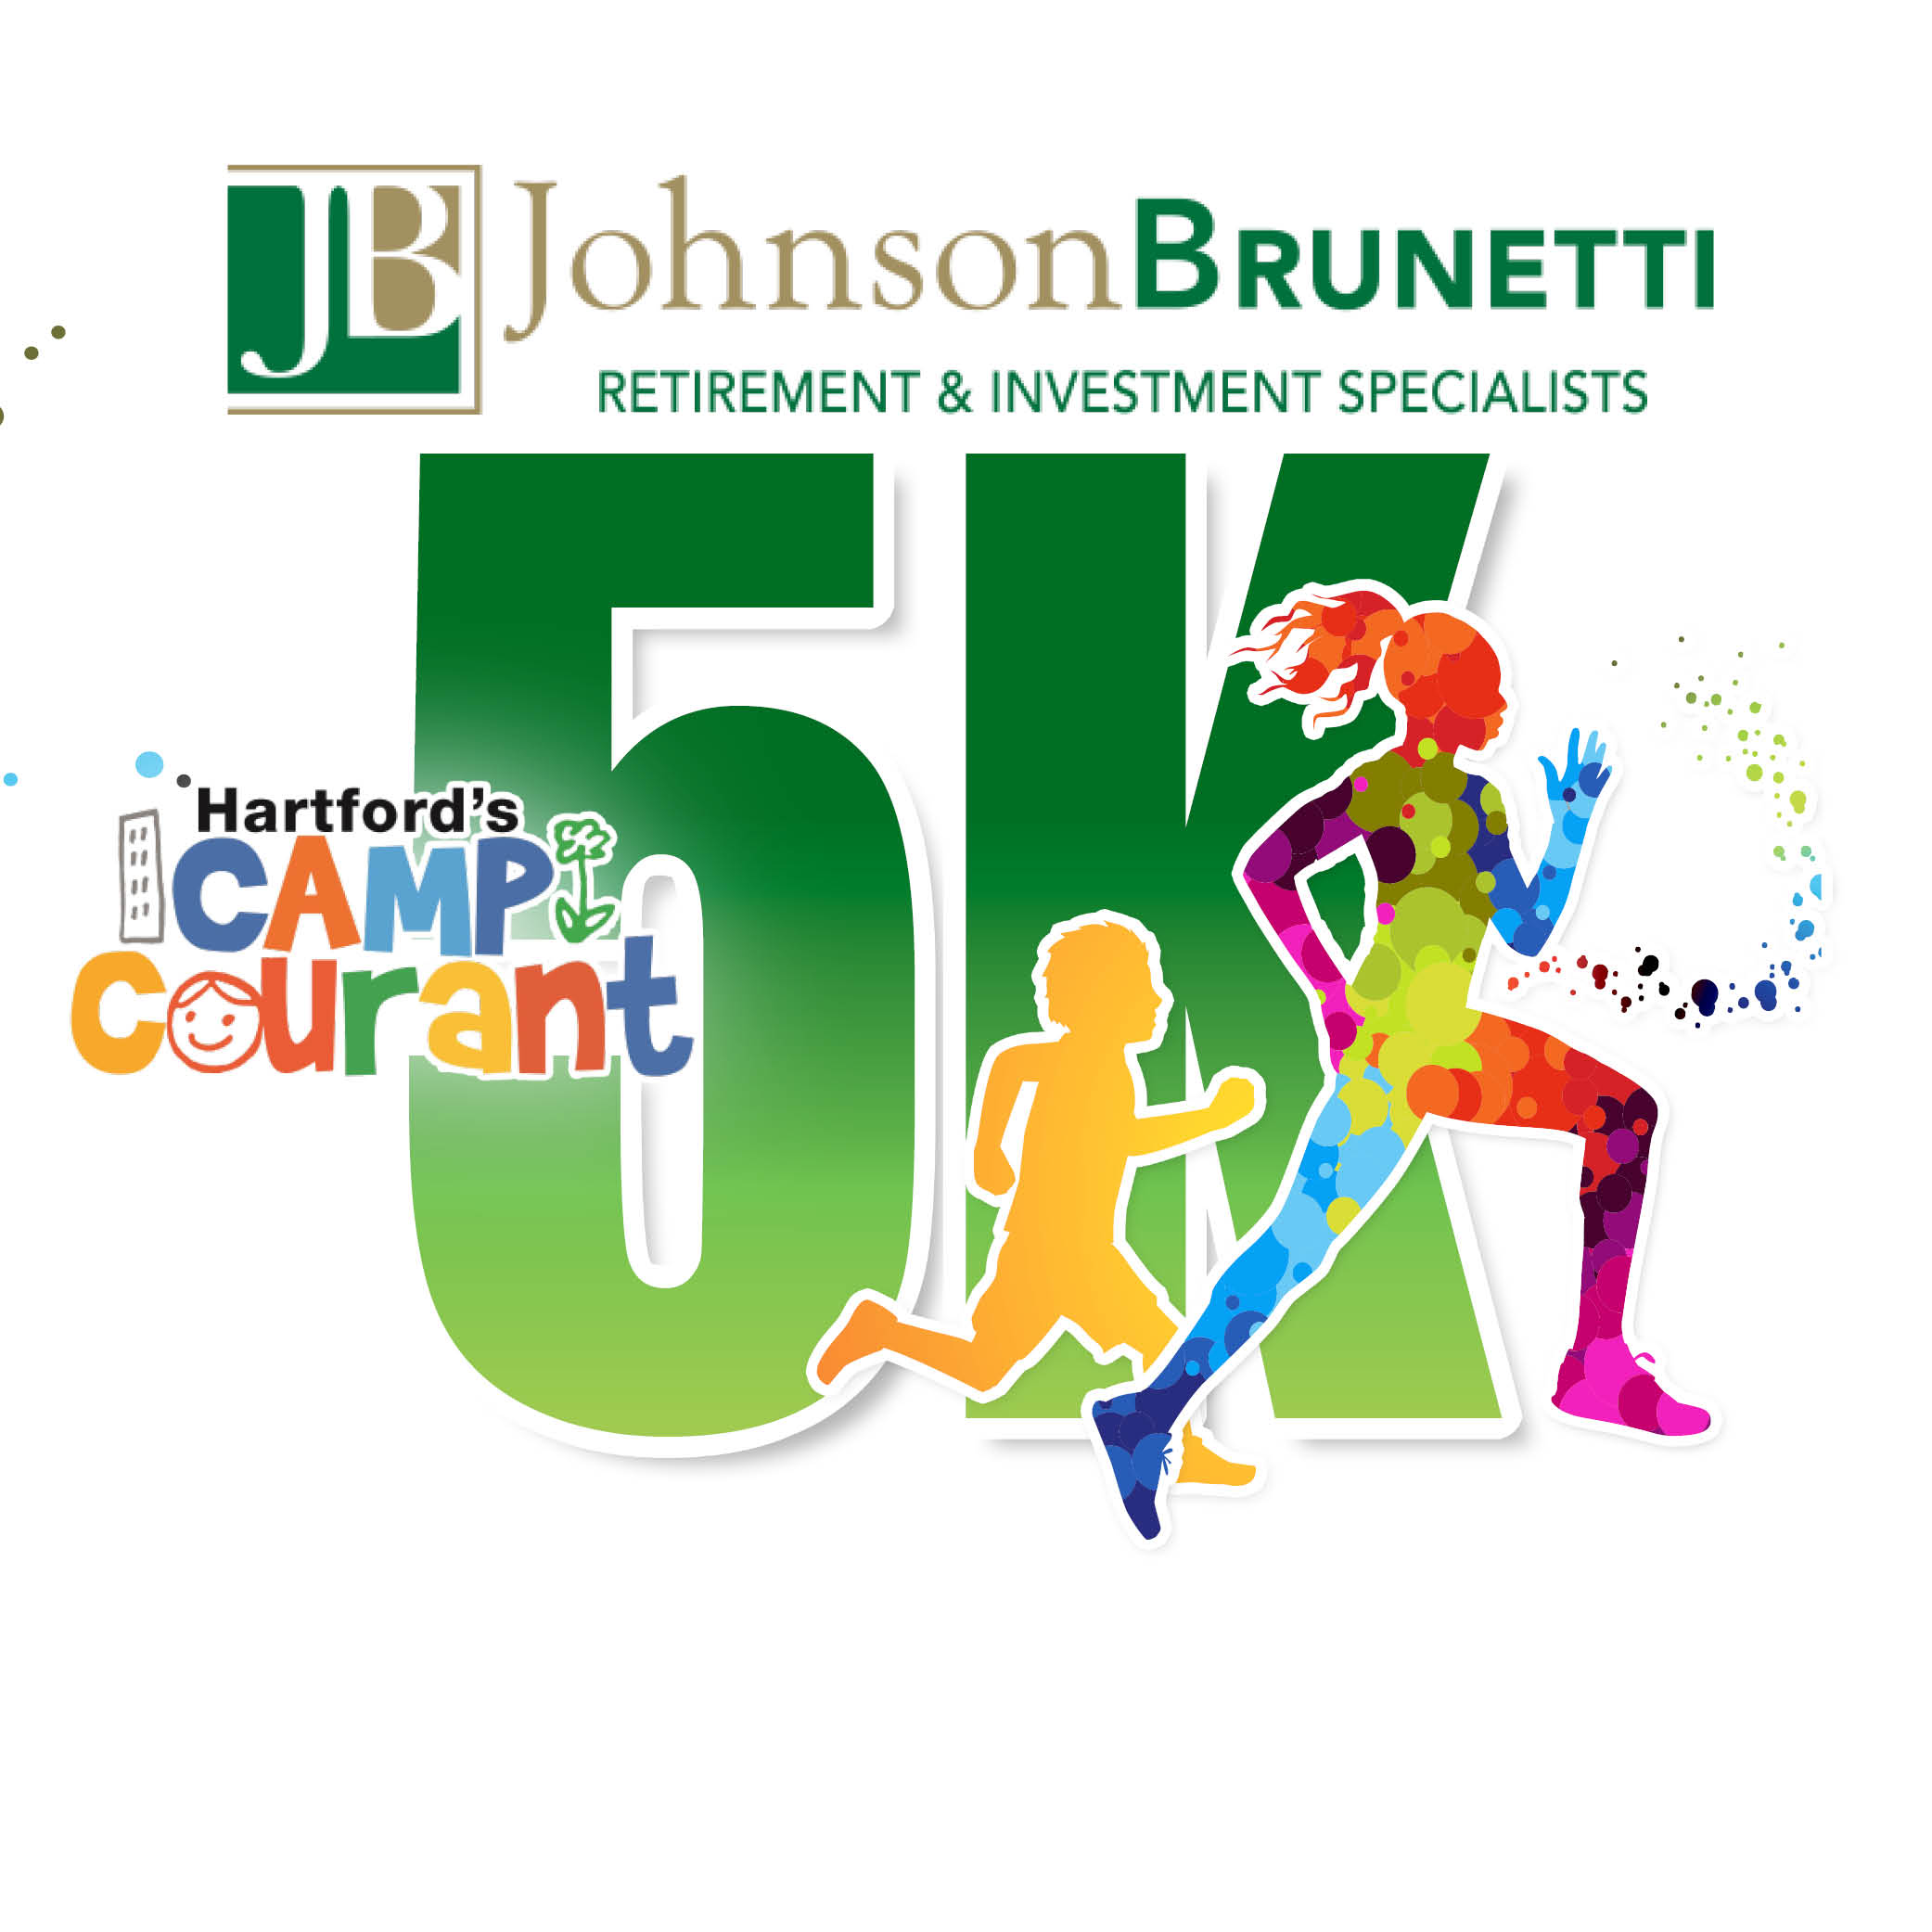 Johnson Brunetti 5K logo on RaceRaves